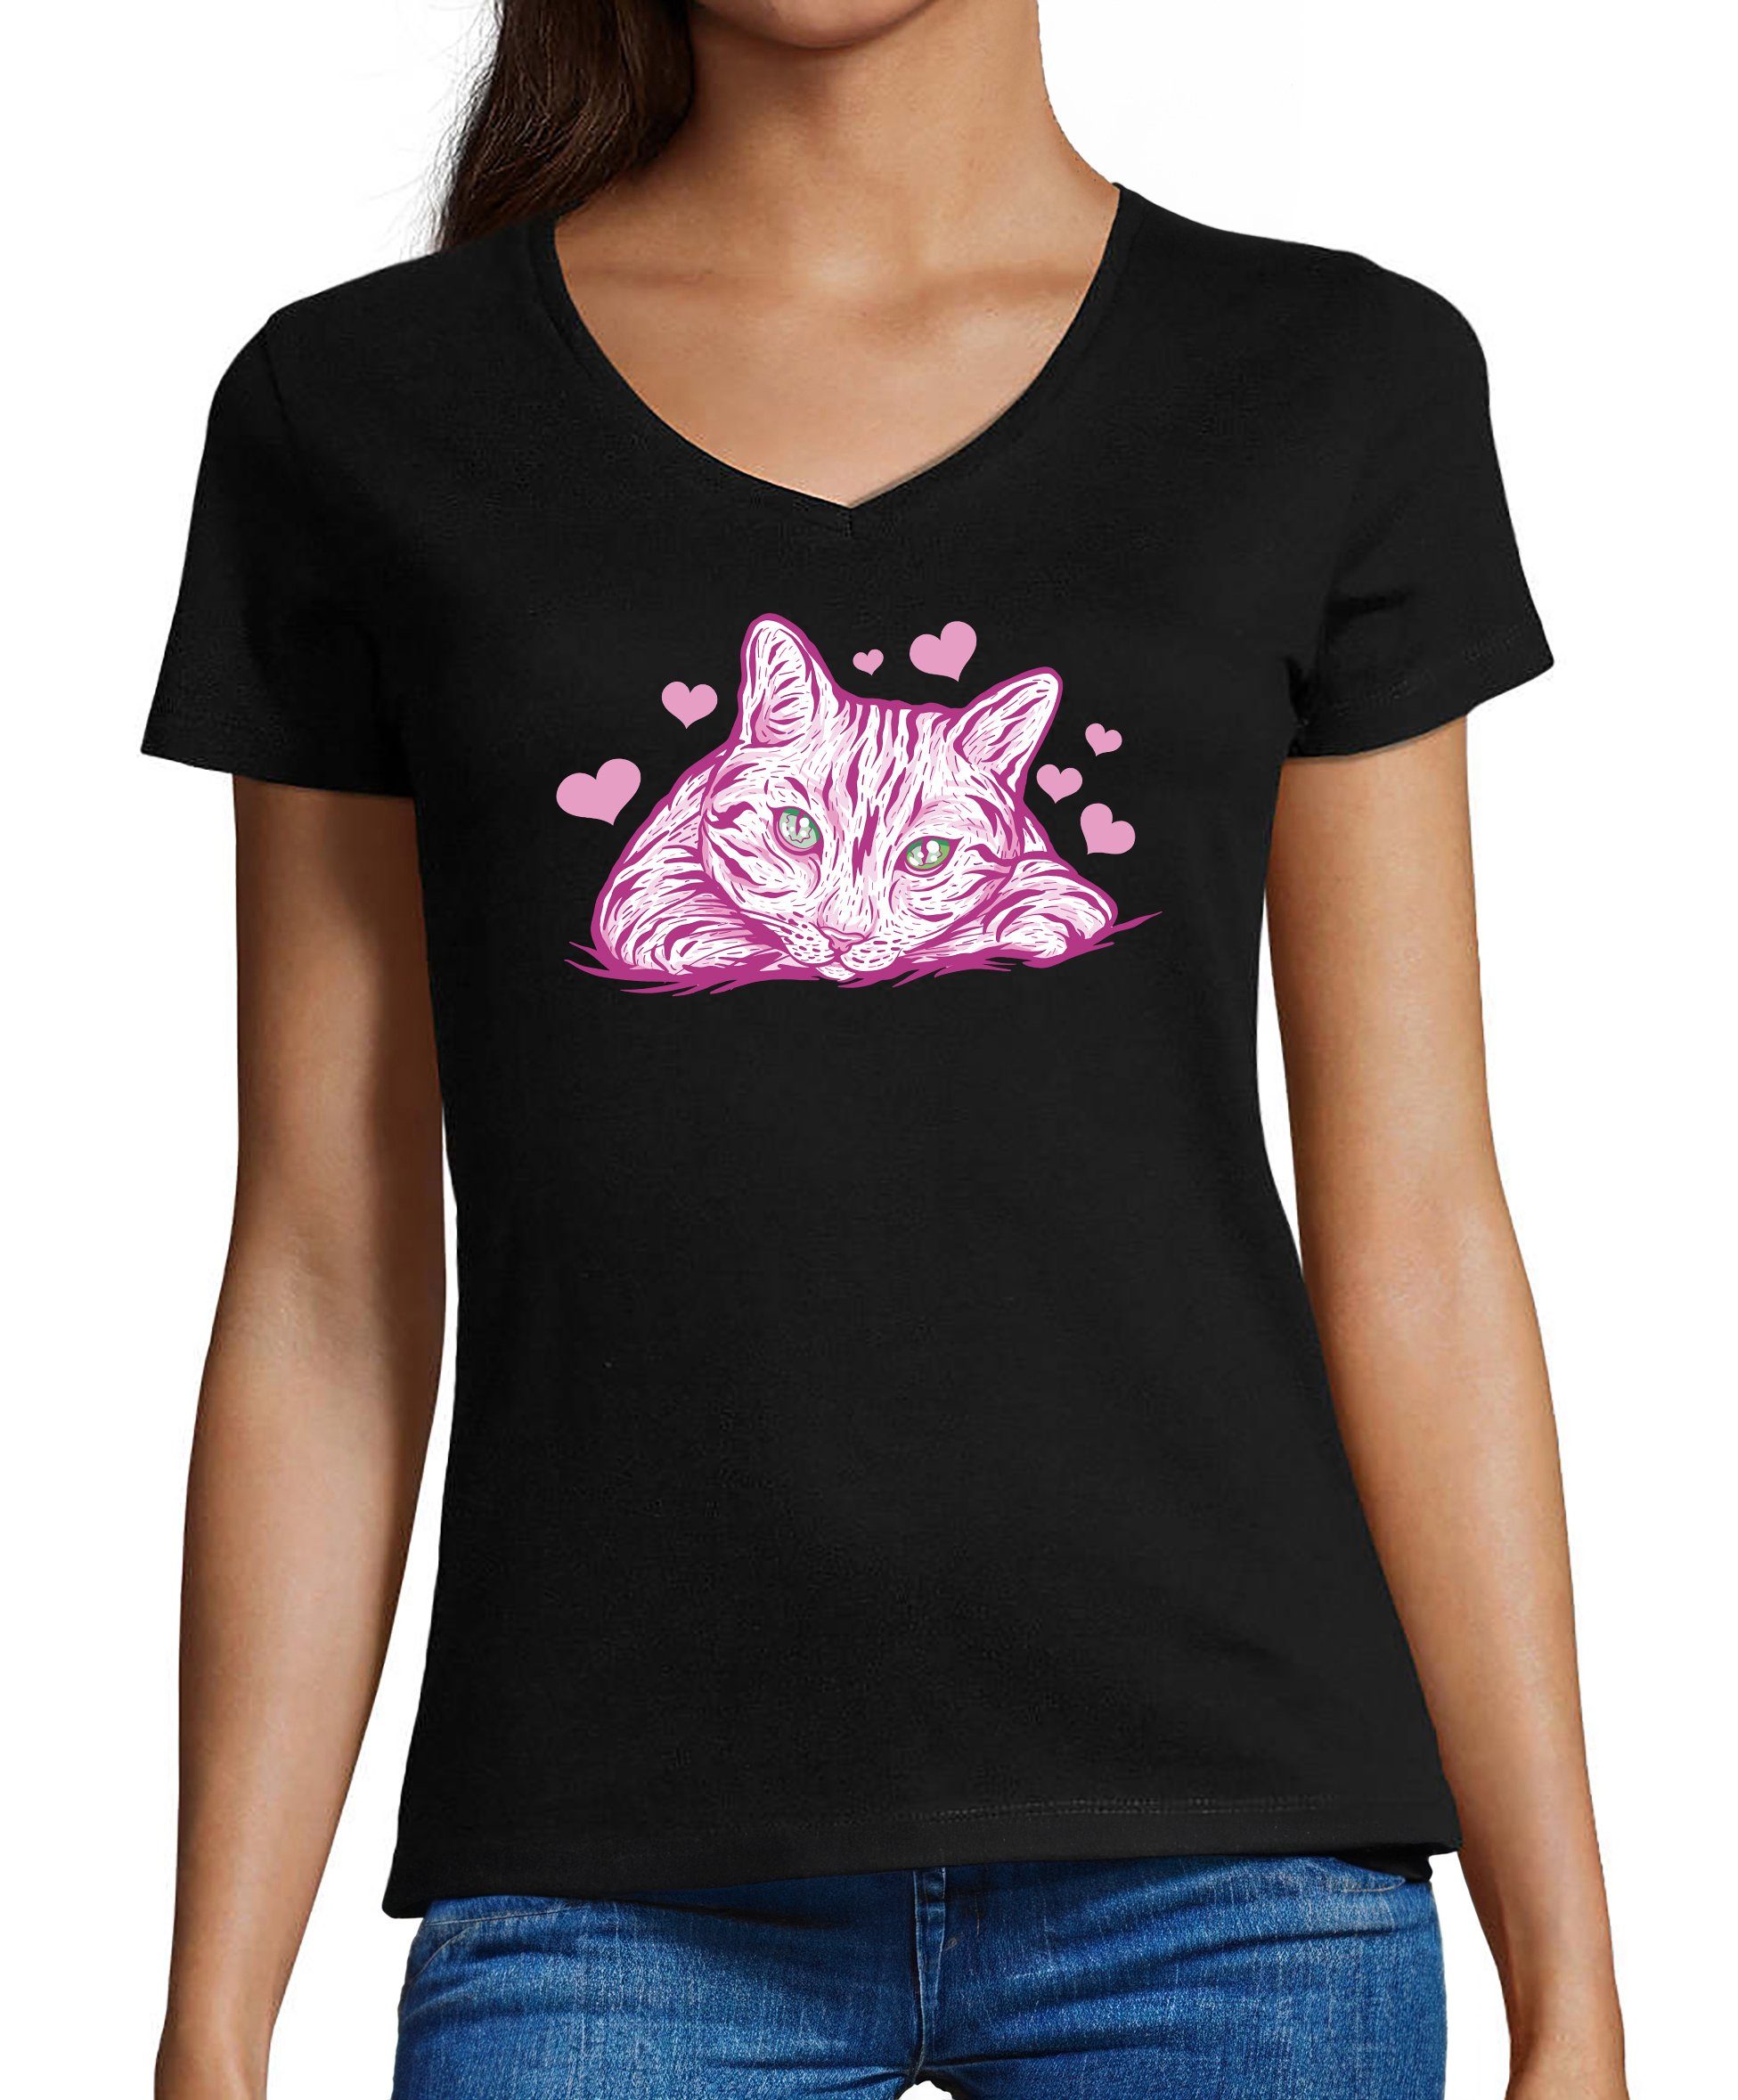 MyDesign24 T-Shirt Damen Katzen Print Shirt bedruckt - Pinke Katze mit Herzen Baumwollshirt mit Aufdruck, Slim Fit, i122 schwarz | V-Shirts